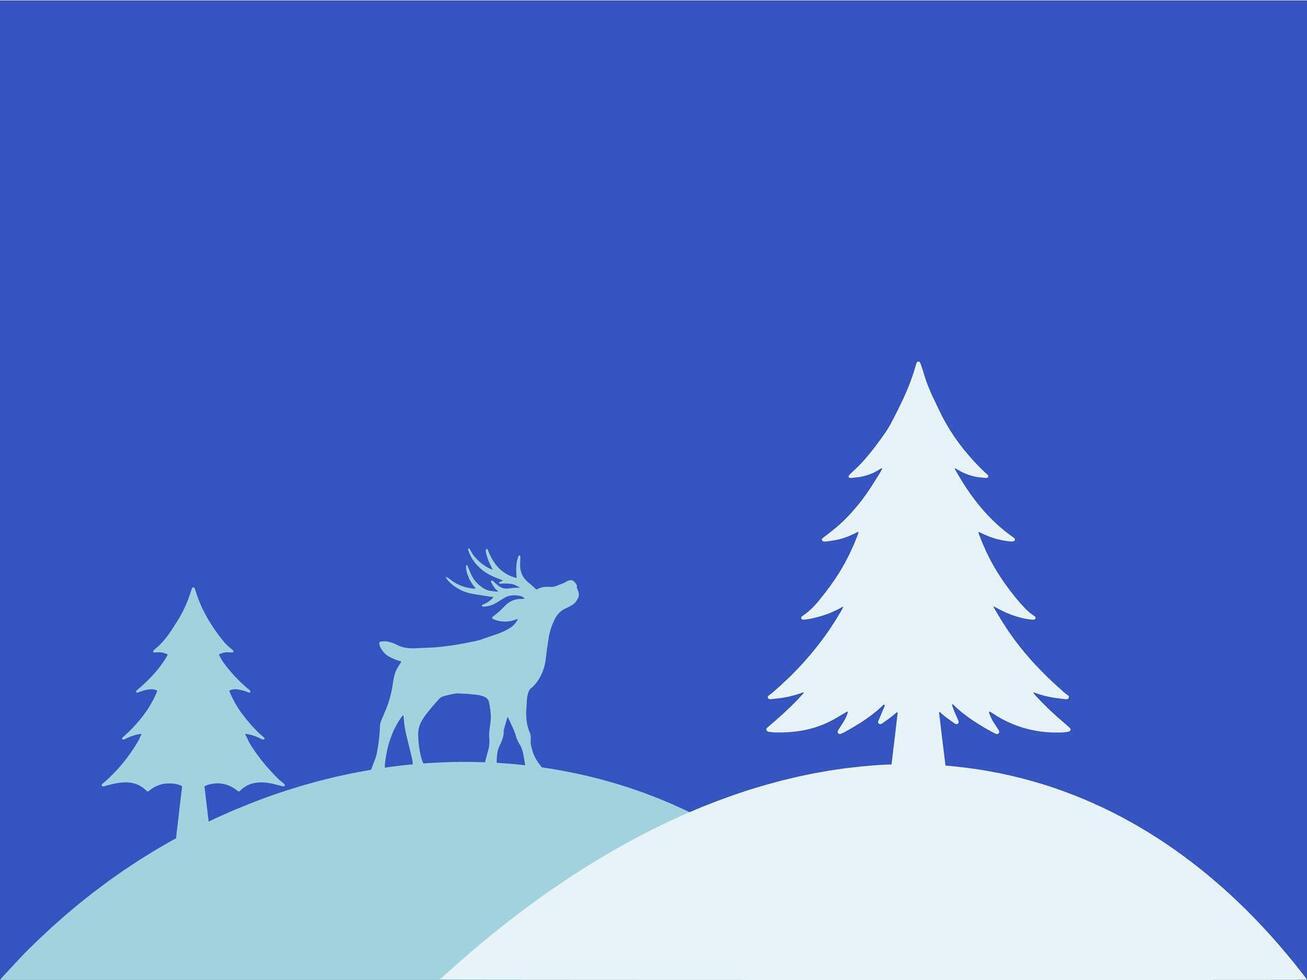 Weihnachten Baum Schnee Hintergrund Illustration vektor